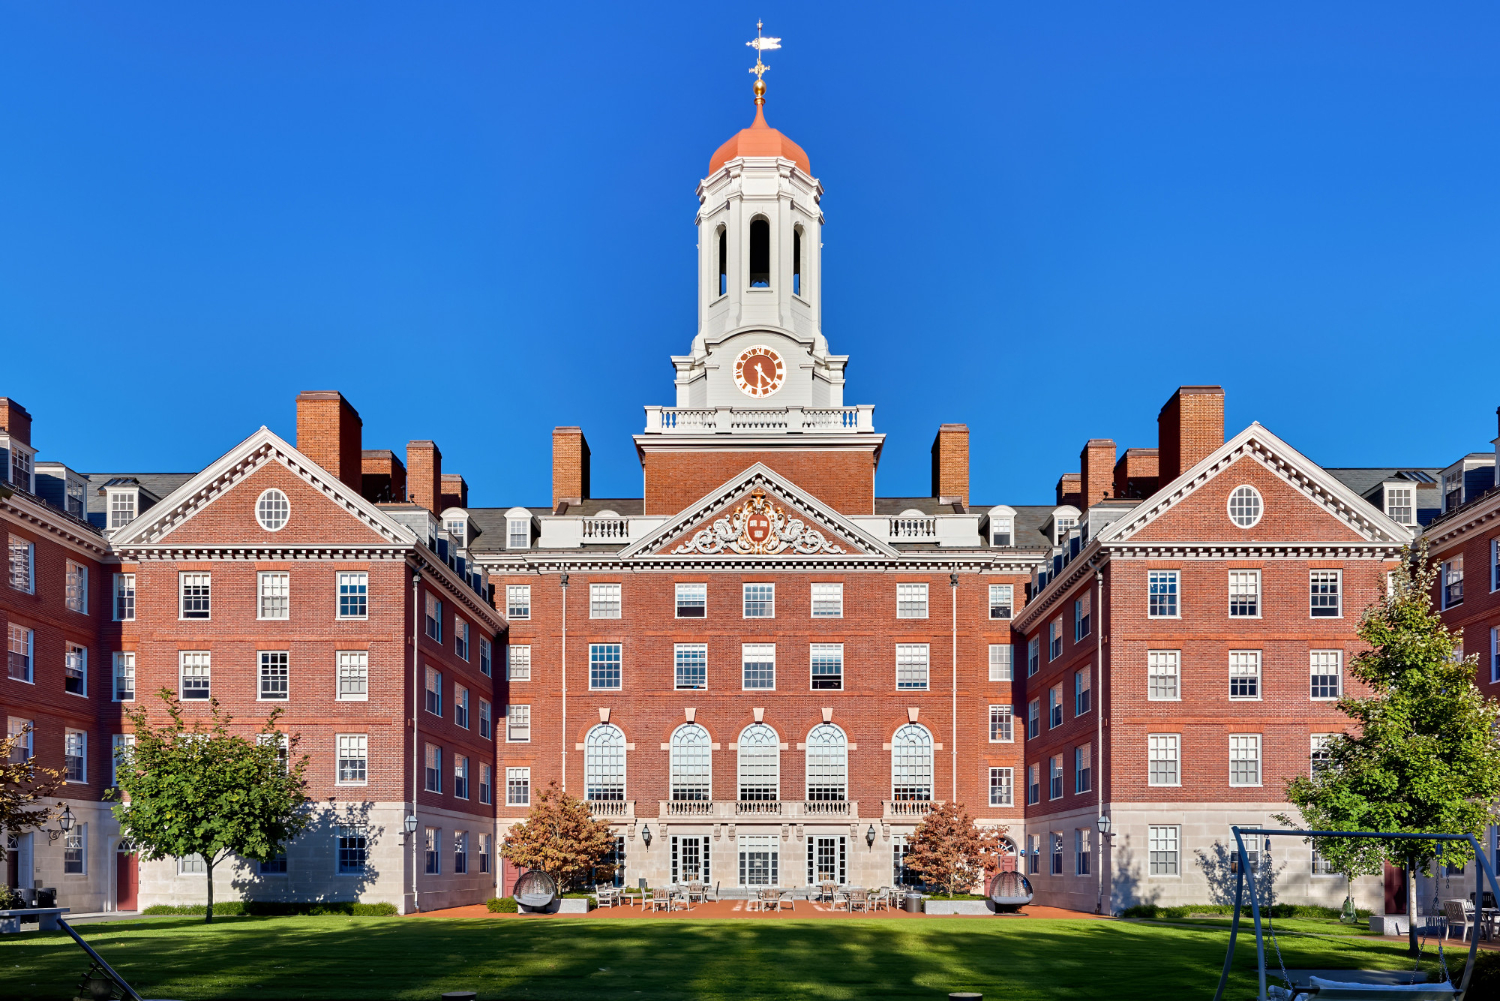 Hình ảnh khuôn viên và ký túc xá gây bất ngờ của Harvard - đại học danh giá nhất hành tinh - Ảnh 1.